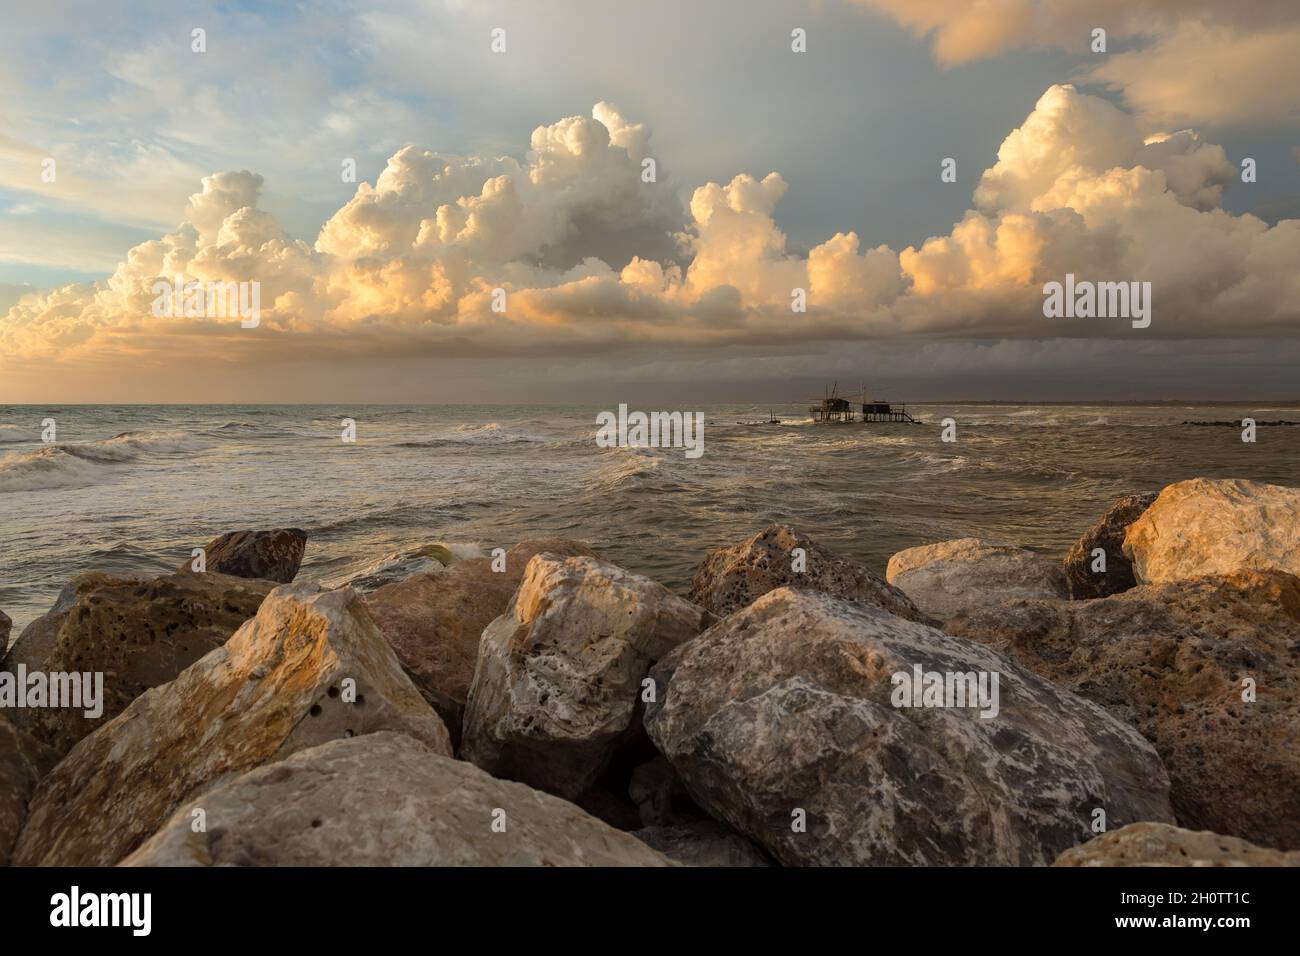 Seascape en Toscane pendant l'heure d'or après une tempête.Un Trabucco (pêche à la mashine) en arrière-plan.Nuages dans le ciel.Rochers au premier plan Banque D'Images